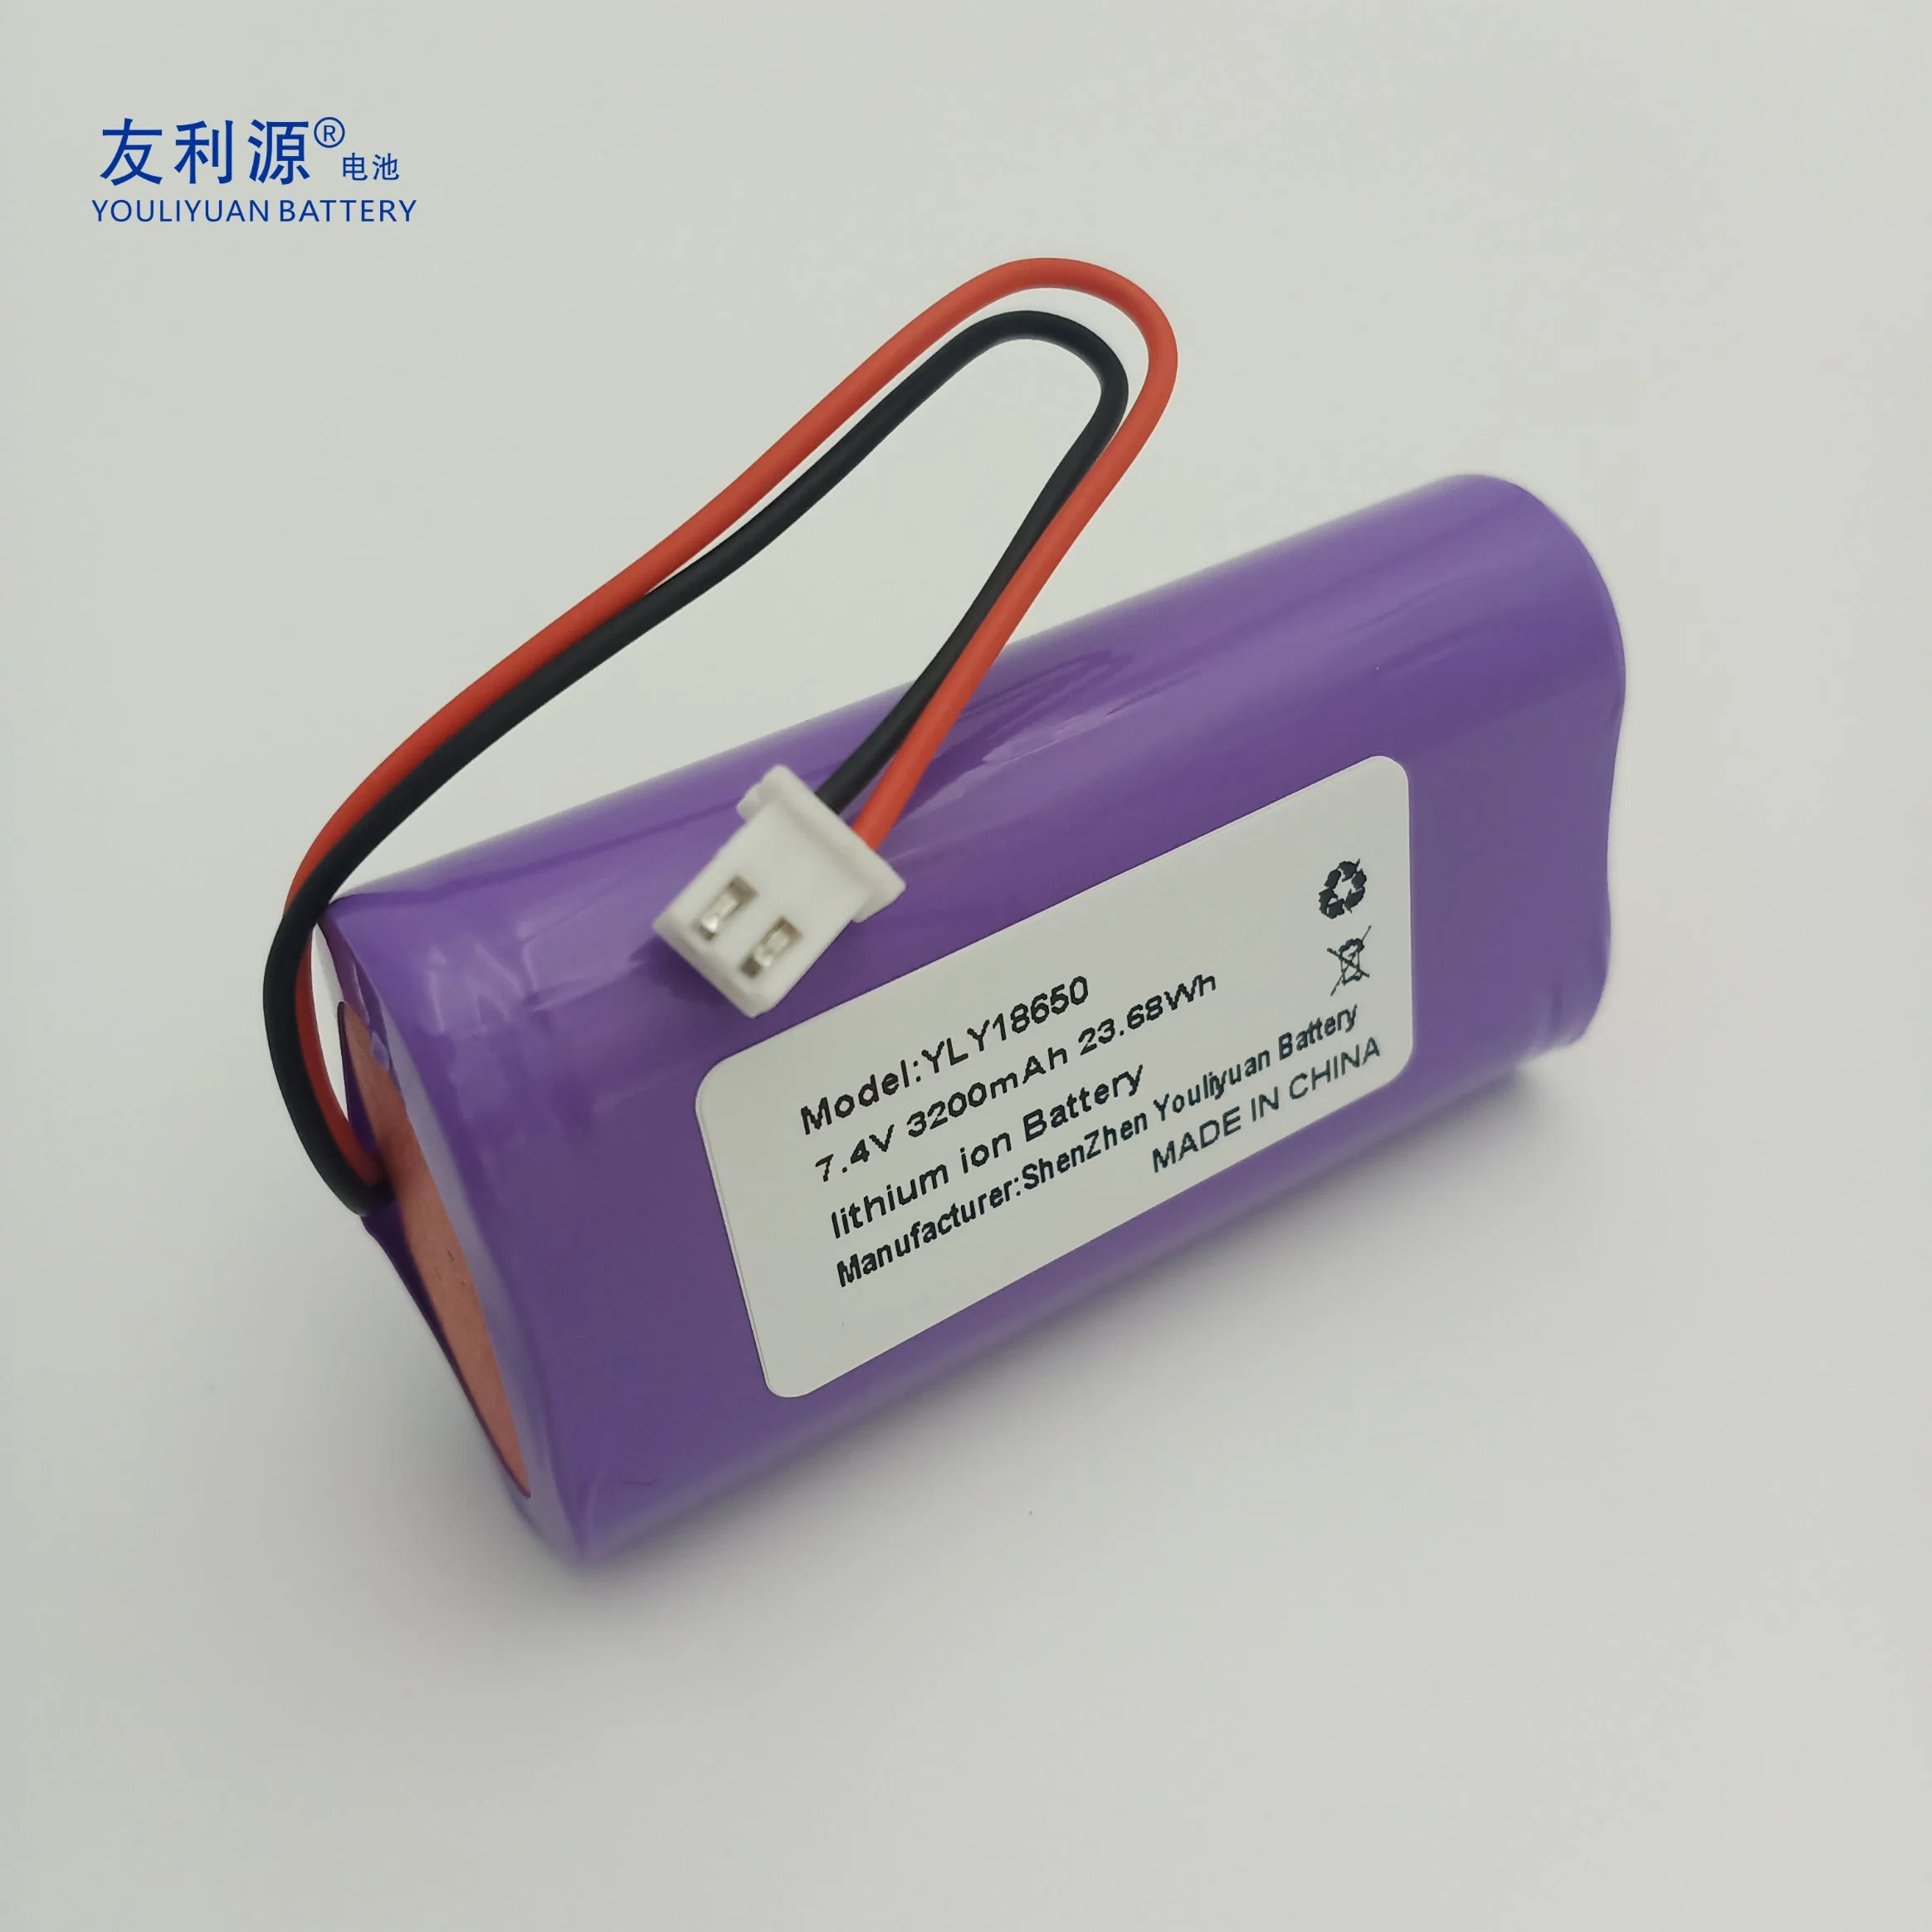 Bateria de iões de lítio recarregável de 200mAh e 7,4V de 2s1p, 18650 3200mAh Bateria de emergência bateria de eléctrico bateria Leitor de jogo baterias Câmara digital Baterias